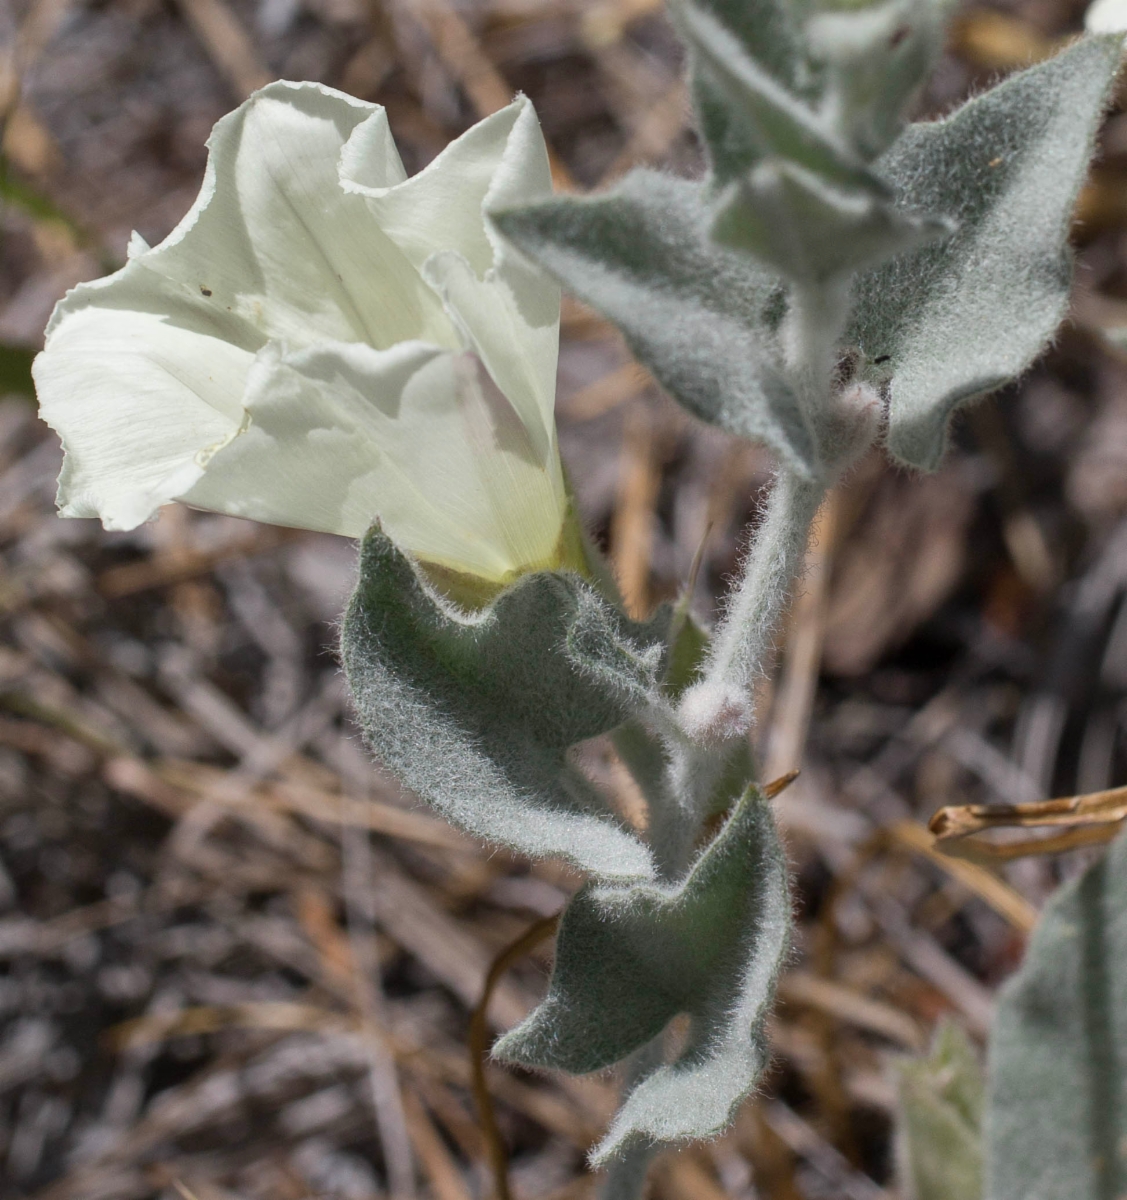 Calystegia malacophylla ssp. pedicellata